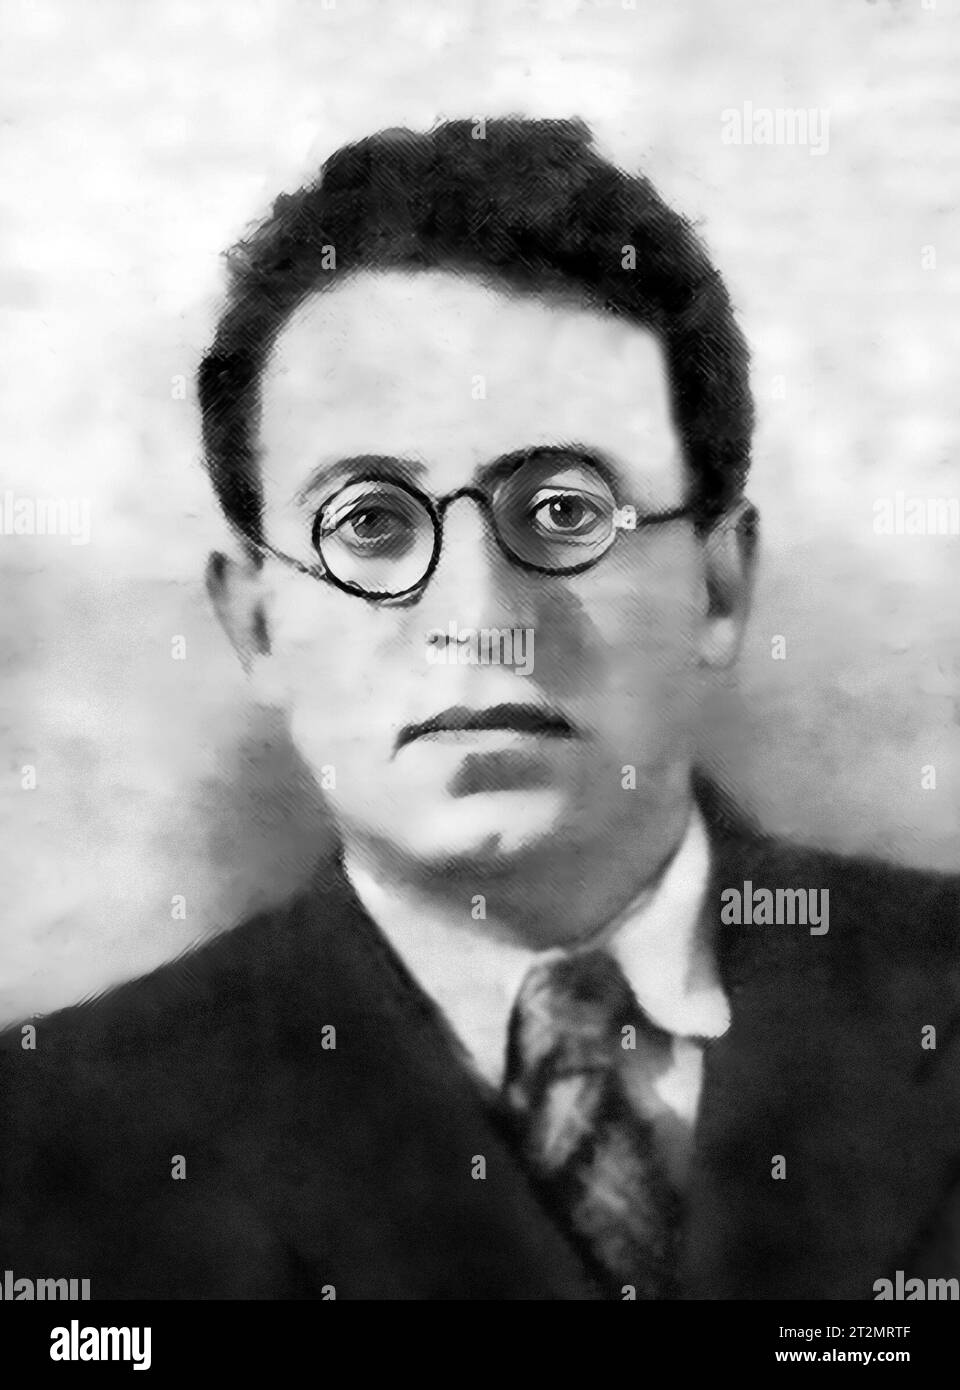 Vasily Grossman. Ritratto dello scrittore e giornalista sovietico, Vasily Semyonovich Grossman (1905-1964) nel 1941 Foto Stock